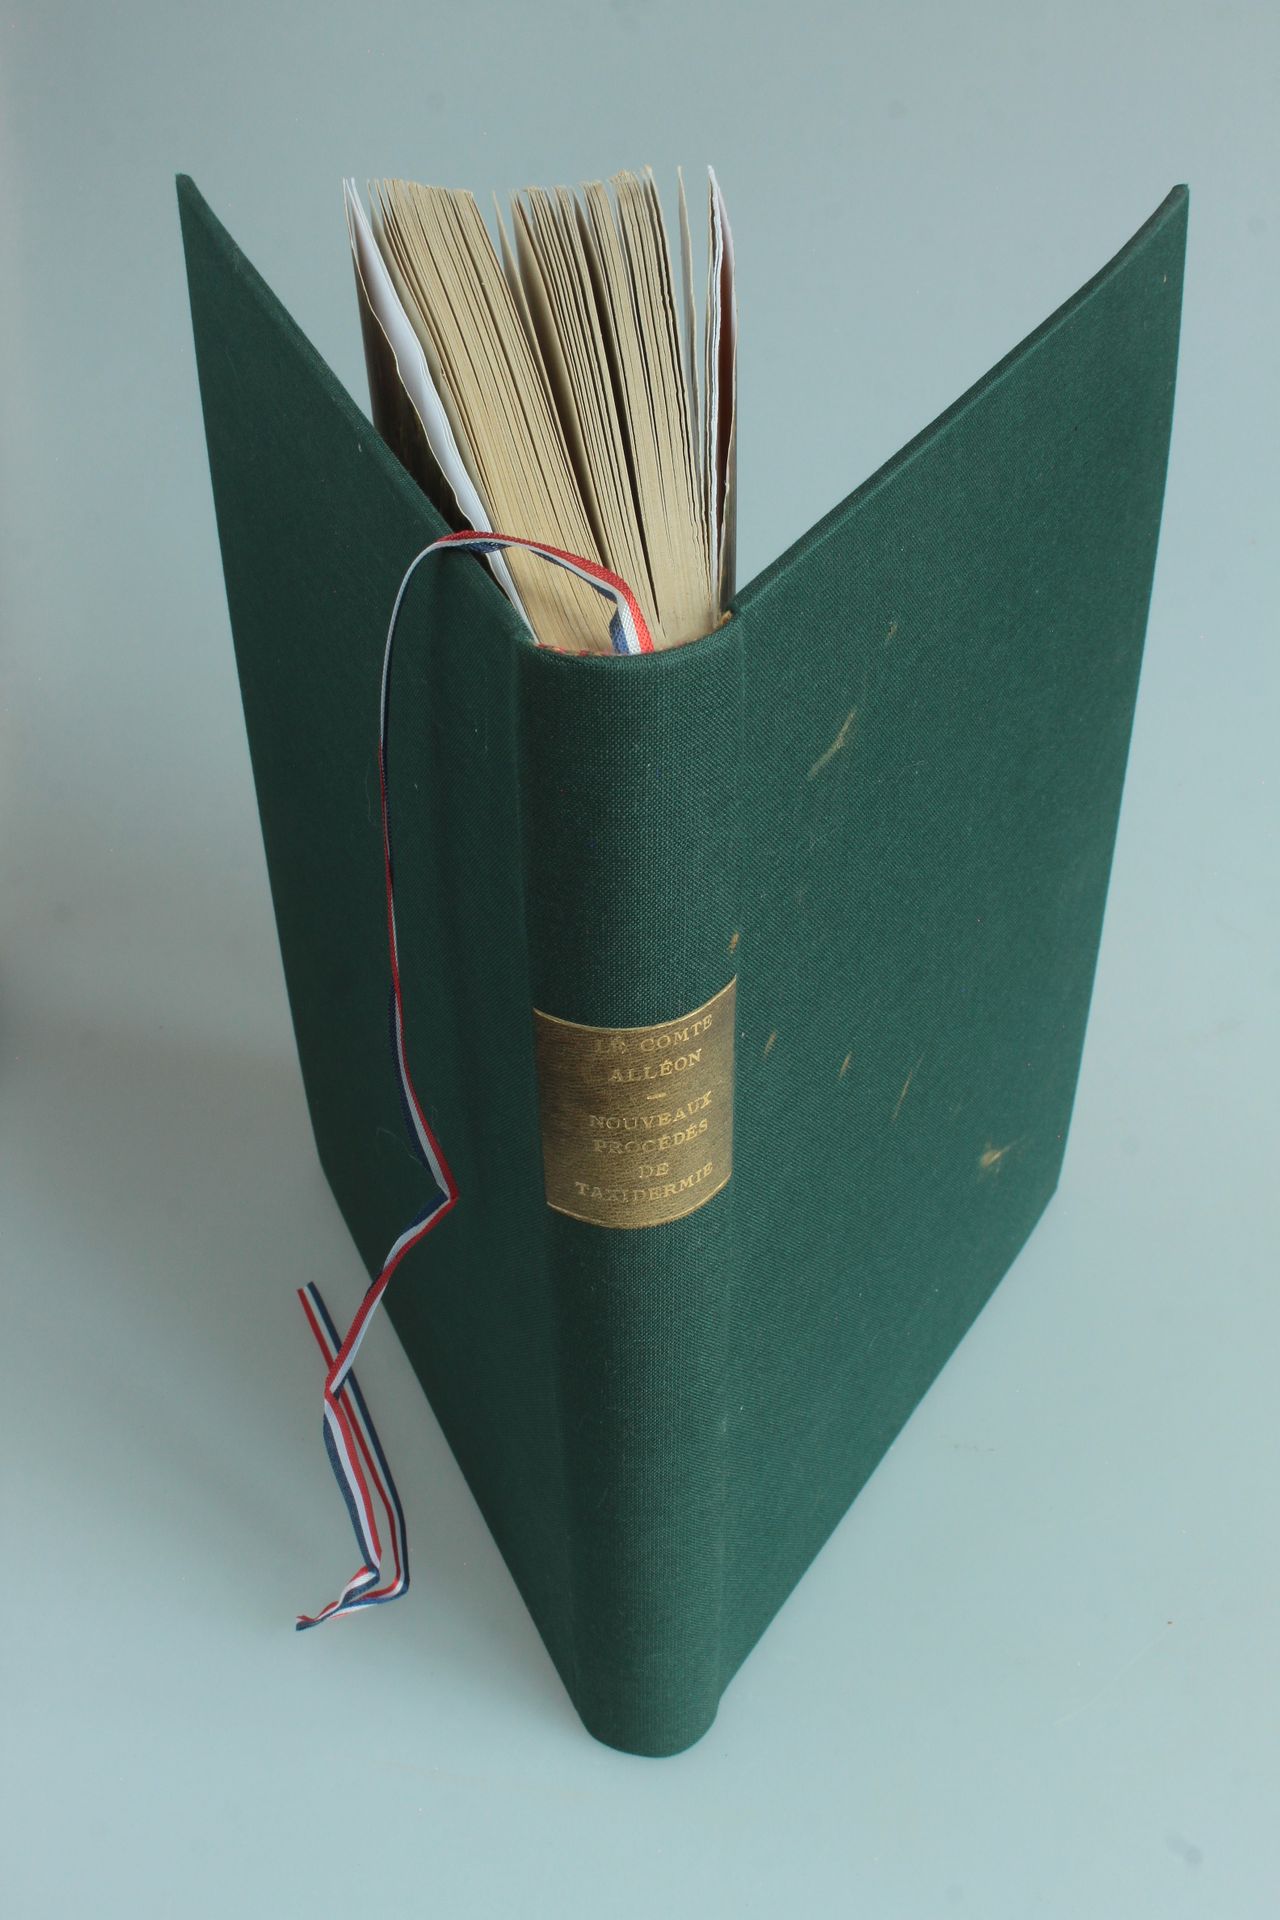 ALLEON (Comte) Nouveaux procédés de taxidermie - 1卷，4开本，用绿布装订，封面保留。100张带标题的附页照片。&hellip;